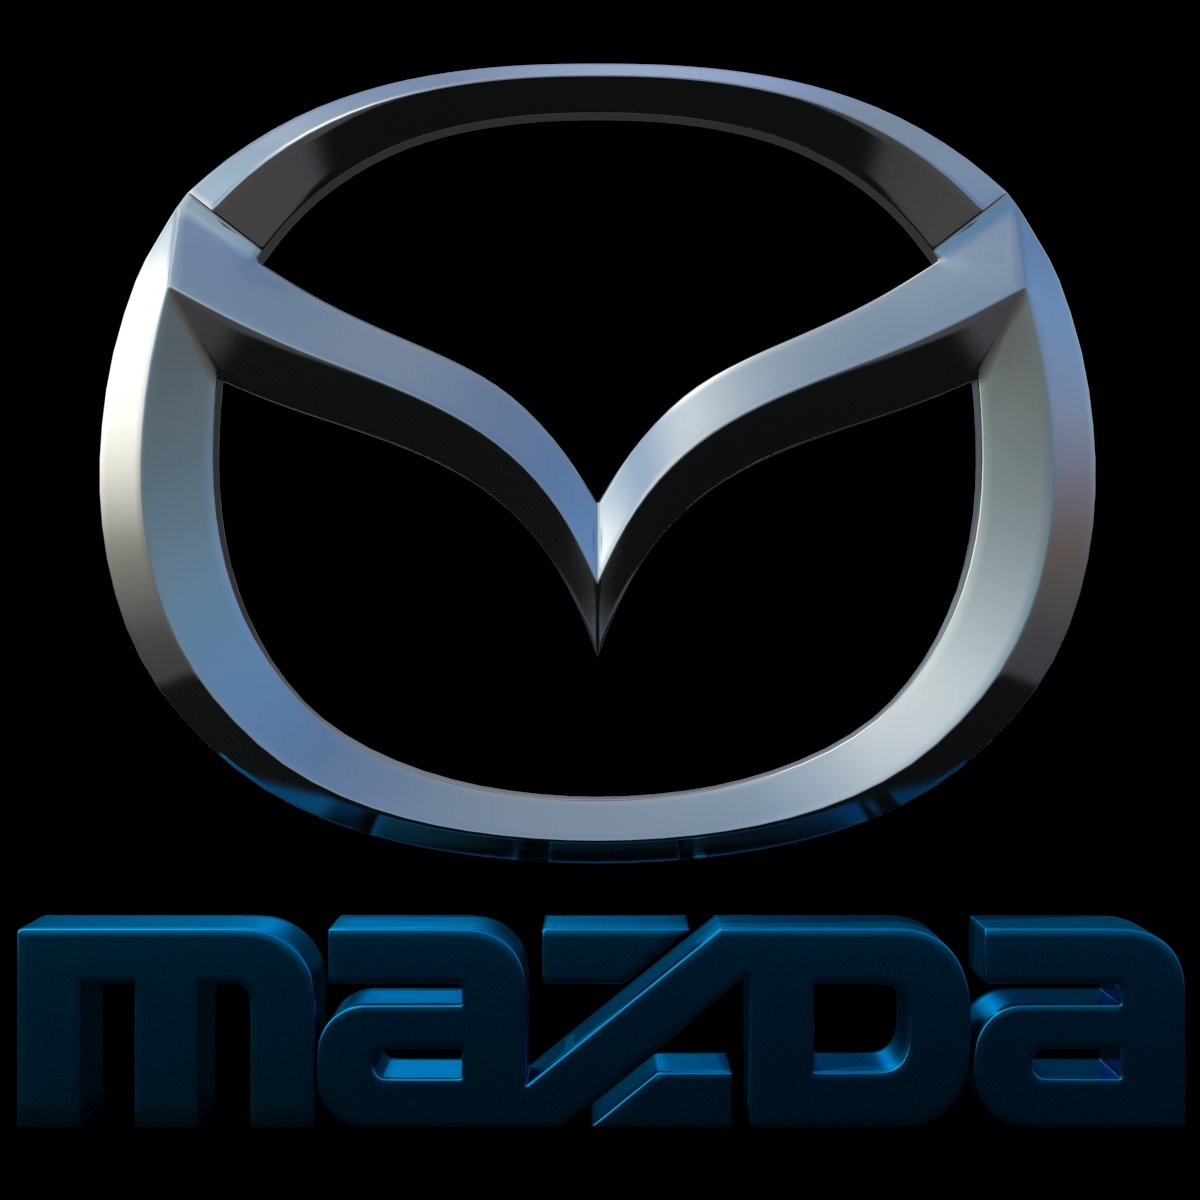 Mazda фирма. Mazda 3 лого. Значок Мазда. Заставка Мазда. Мазда 6 значок.